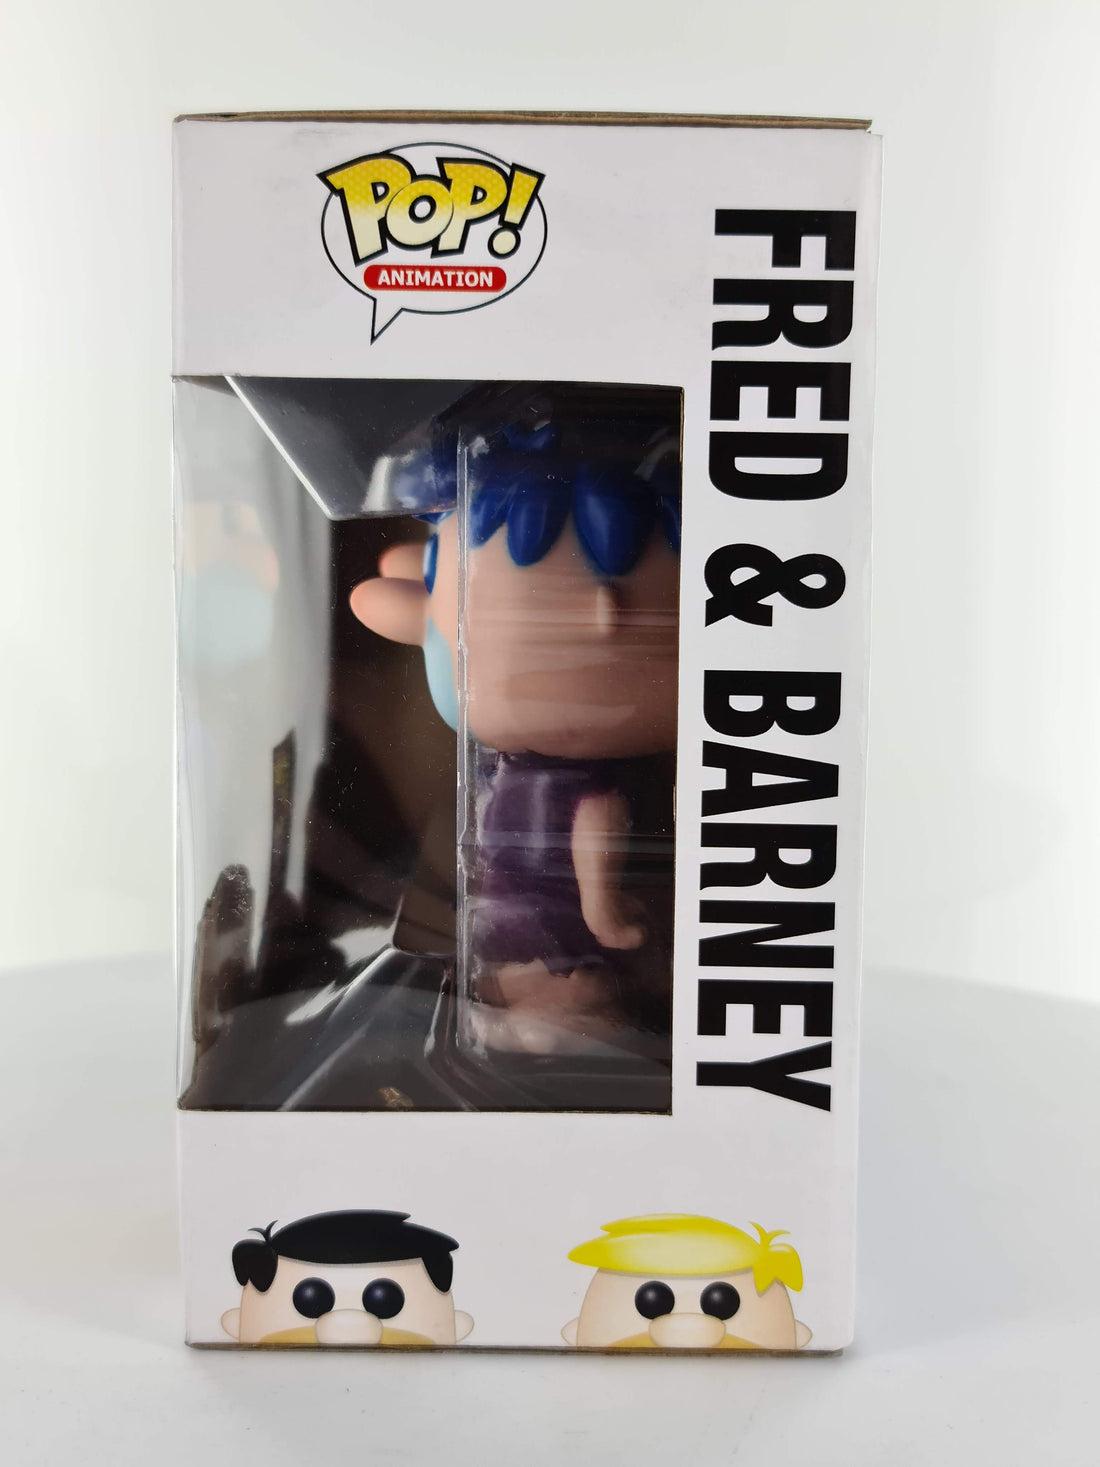 The Flintstones - Fred & Barney 2-Pack ( Blue Hair ) SDCC 2014 LE 480pcs Funko Pop